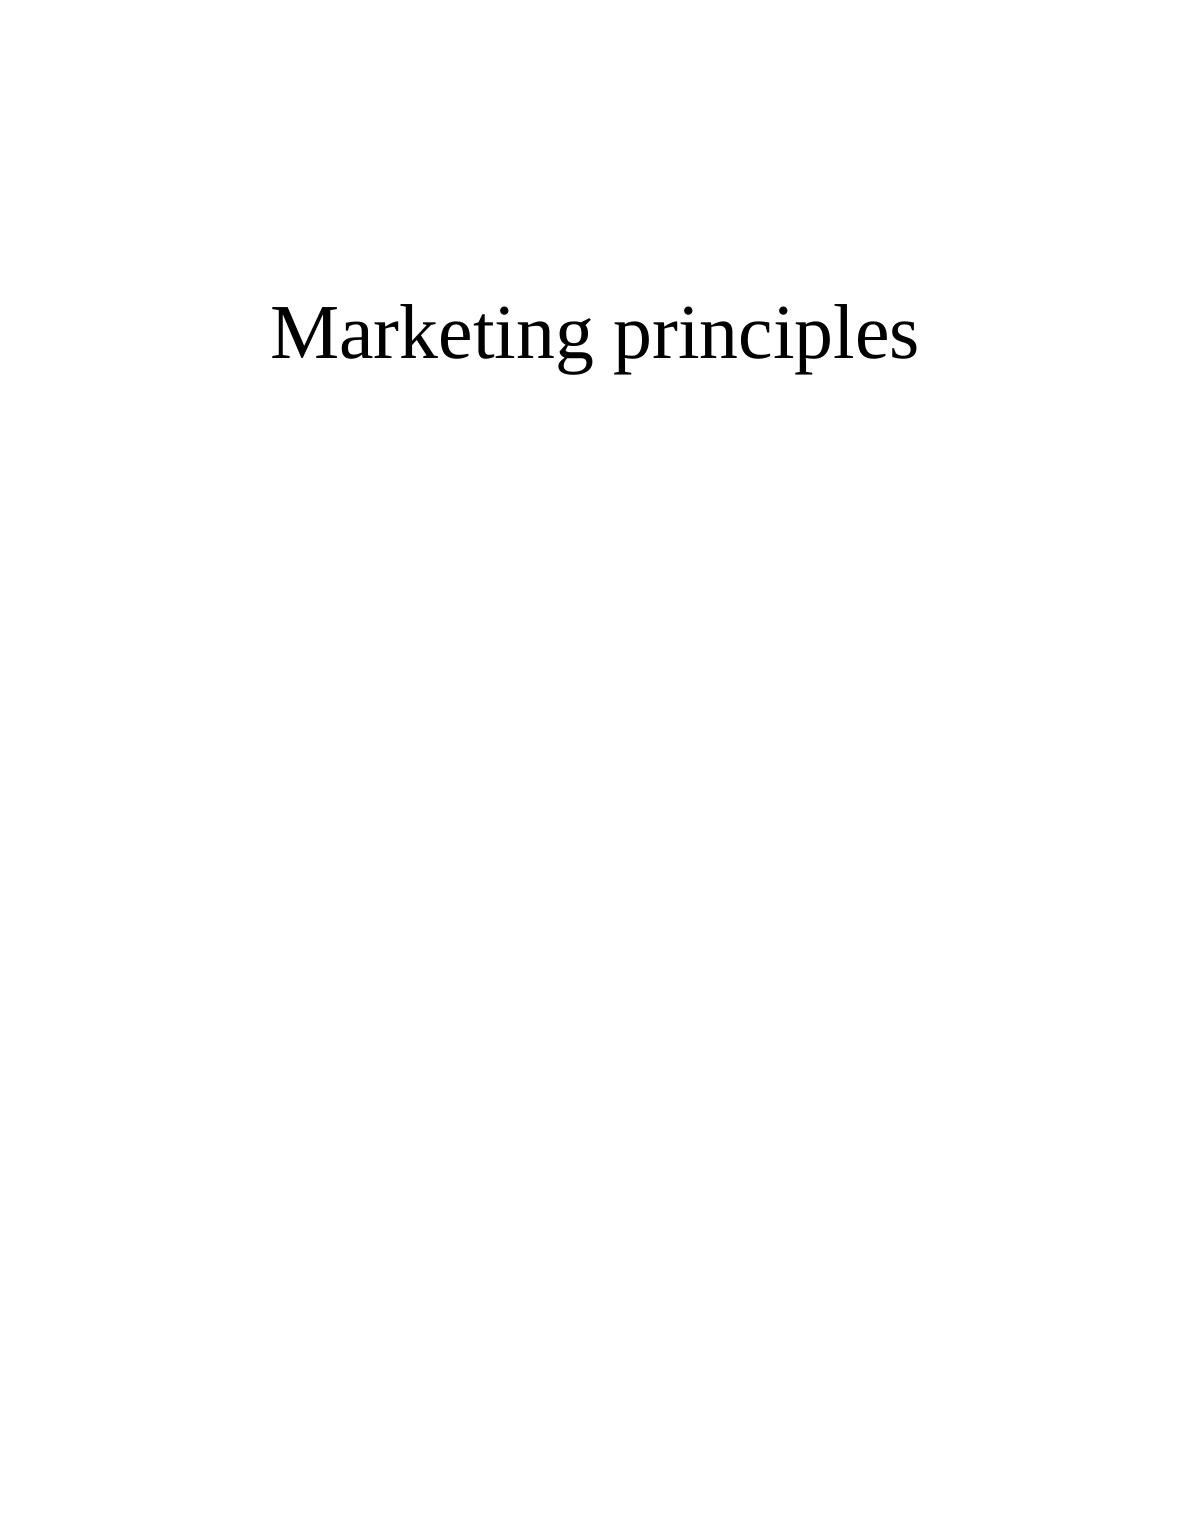 Marketing Principles of Sainsbury_1